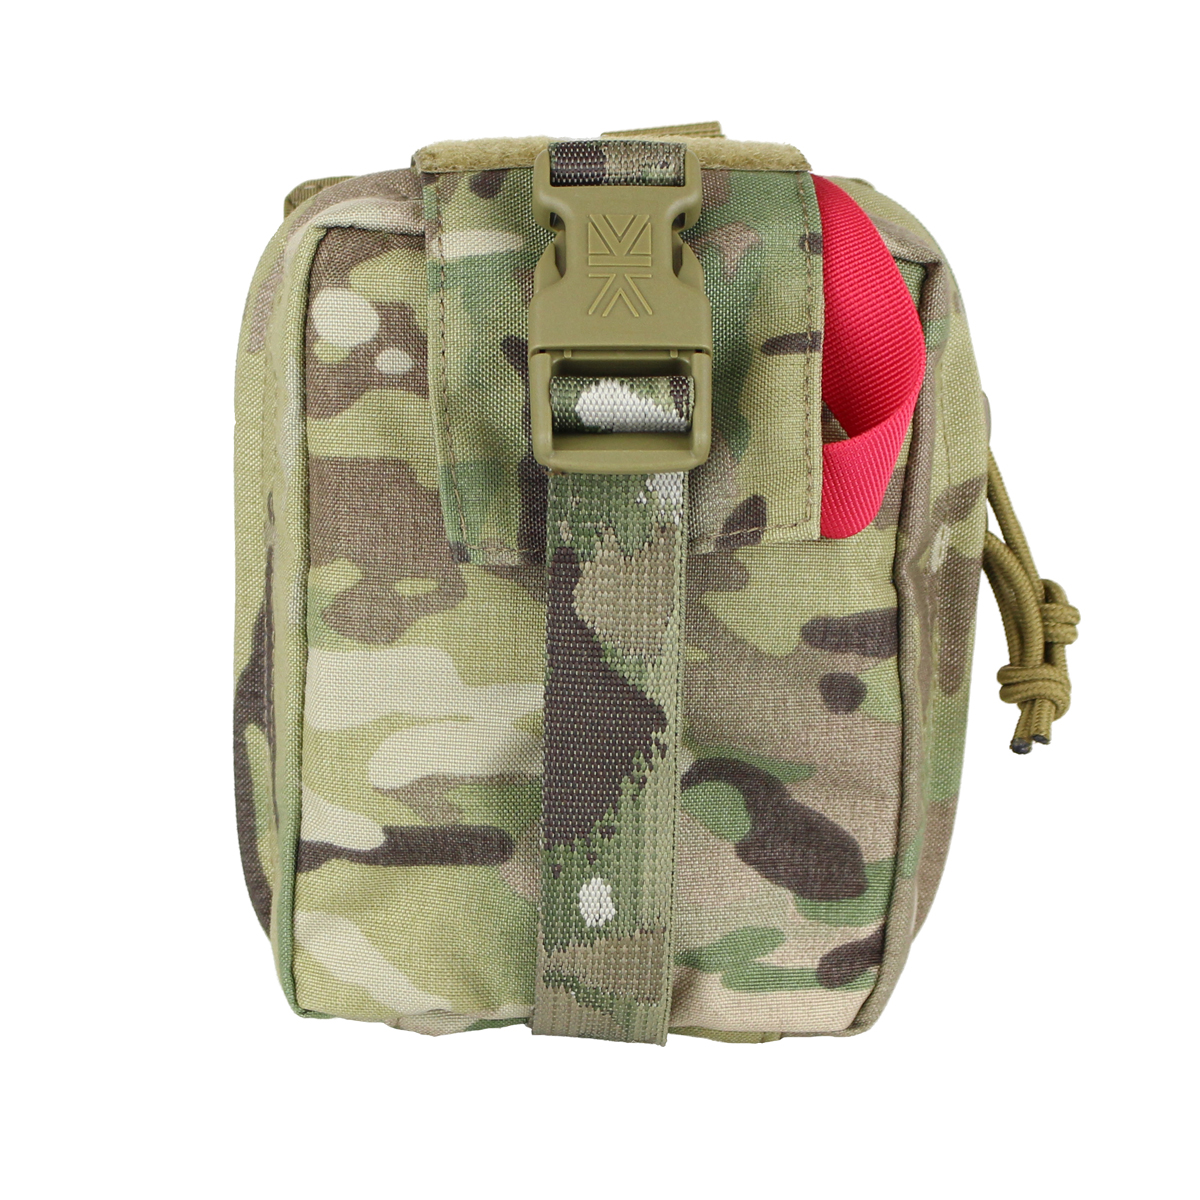 Kupite vrhunsko vojaško medicinsko torbico IA Medical QR Modular Karrimor SF na Opremljen.si. Ta večnamenska torbica je idealna za vojaško opremo in medicinske potrebe. Prenosna, taktična in učinkovita - prava izbira za vojsko in outdoor navdušence.